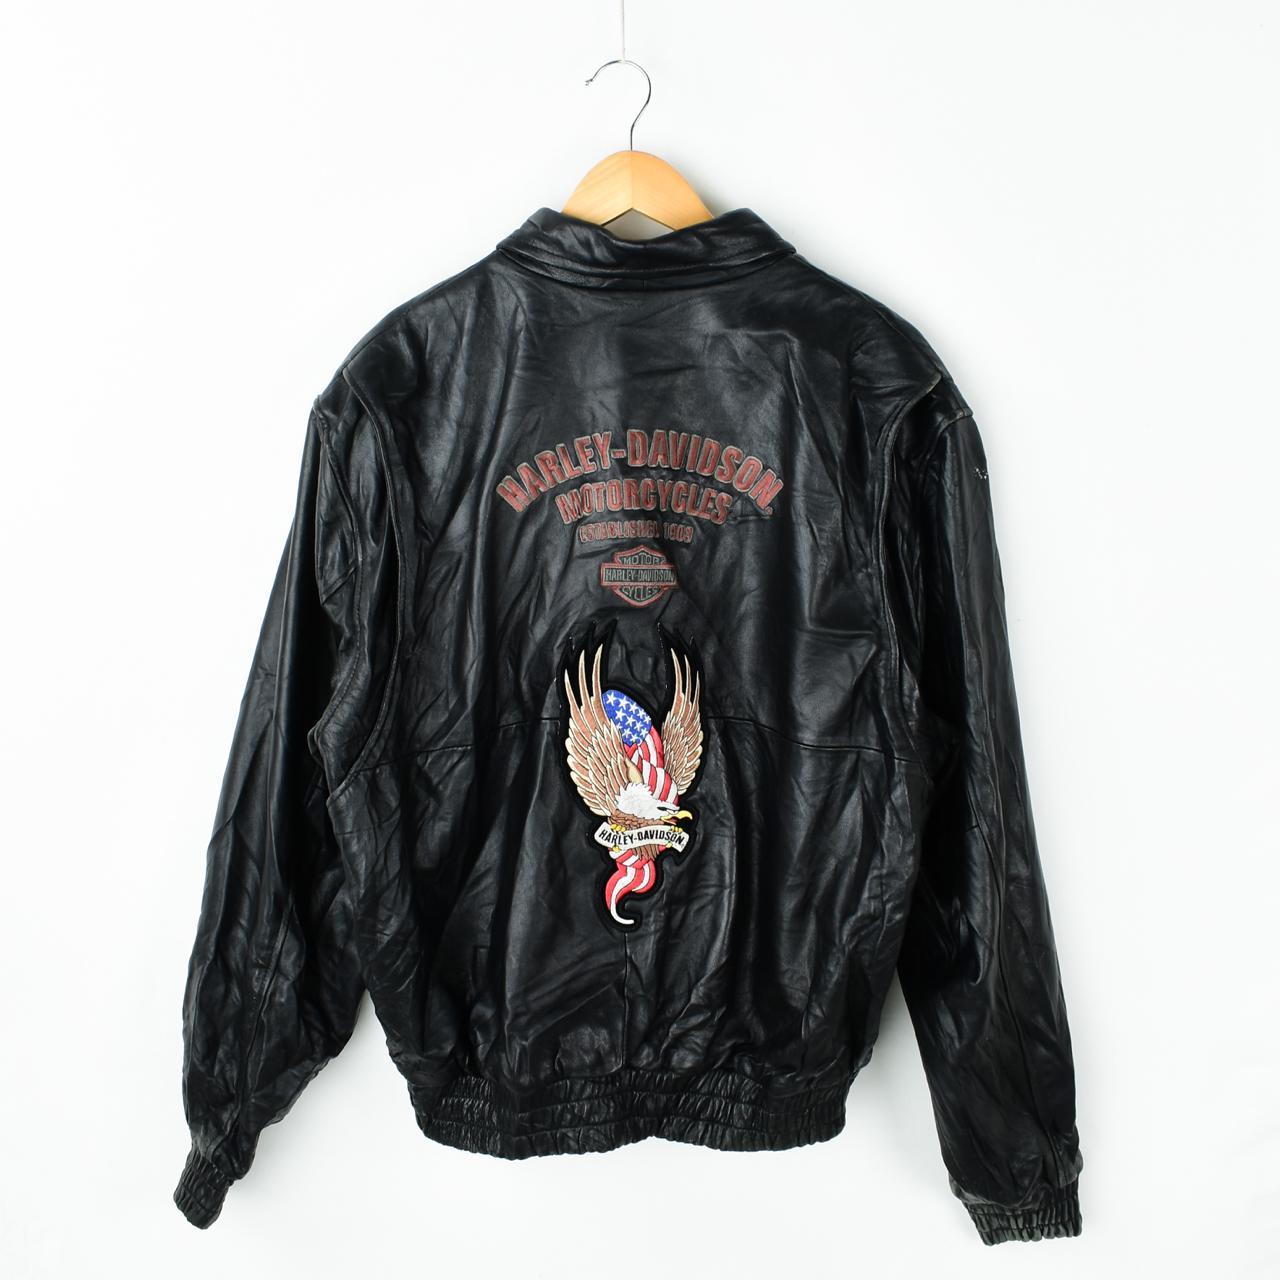 Vintage 90s Harley Davidson Leather Jacket |... - Depop